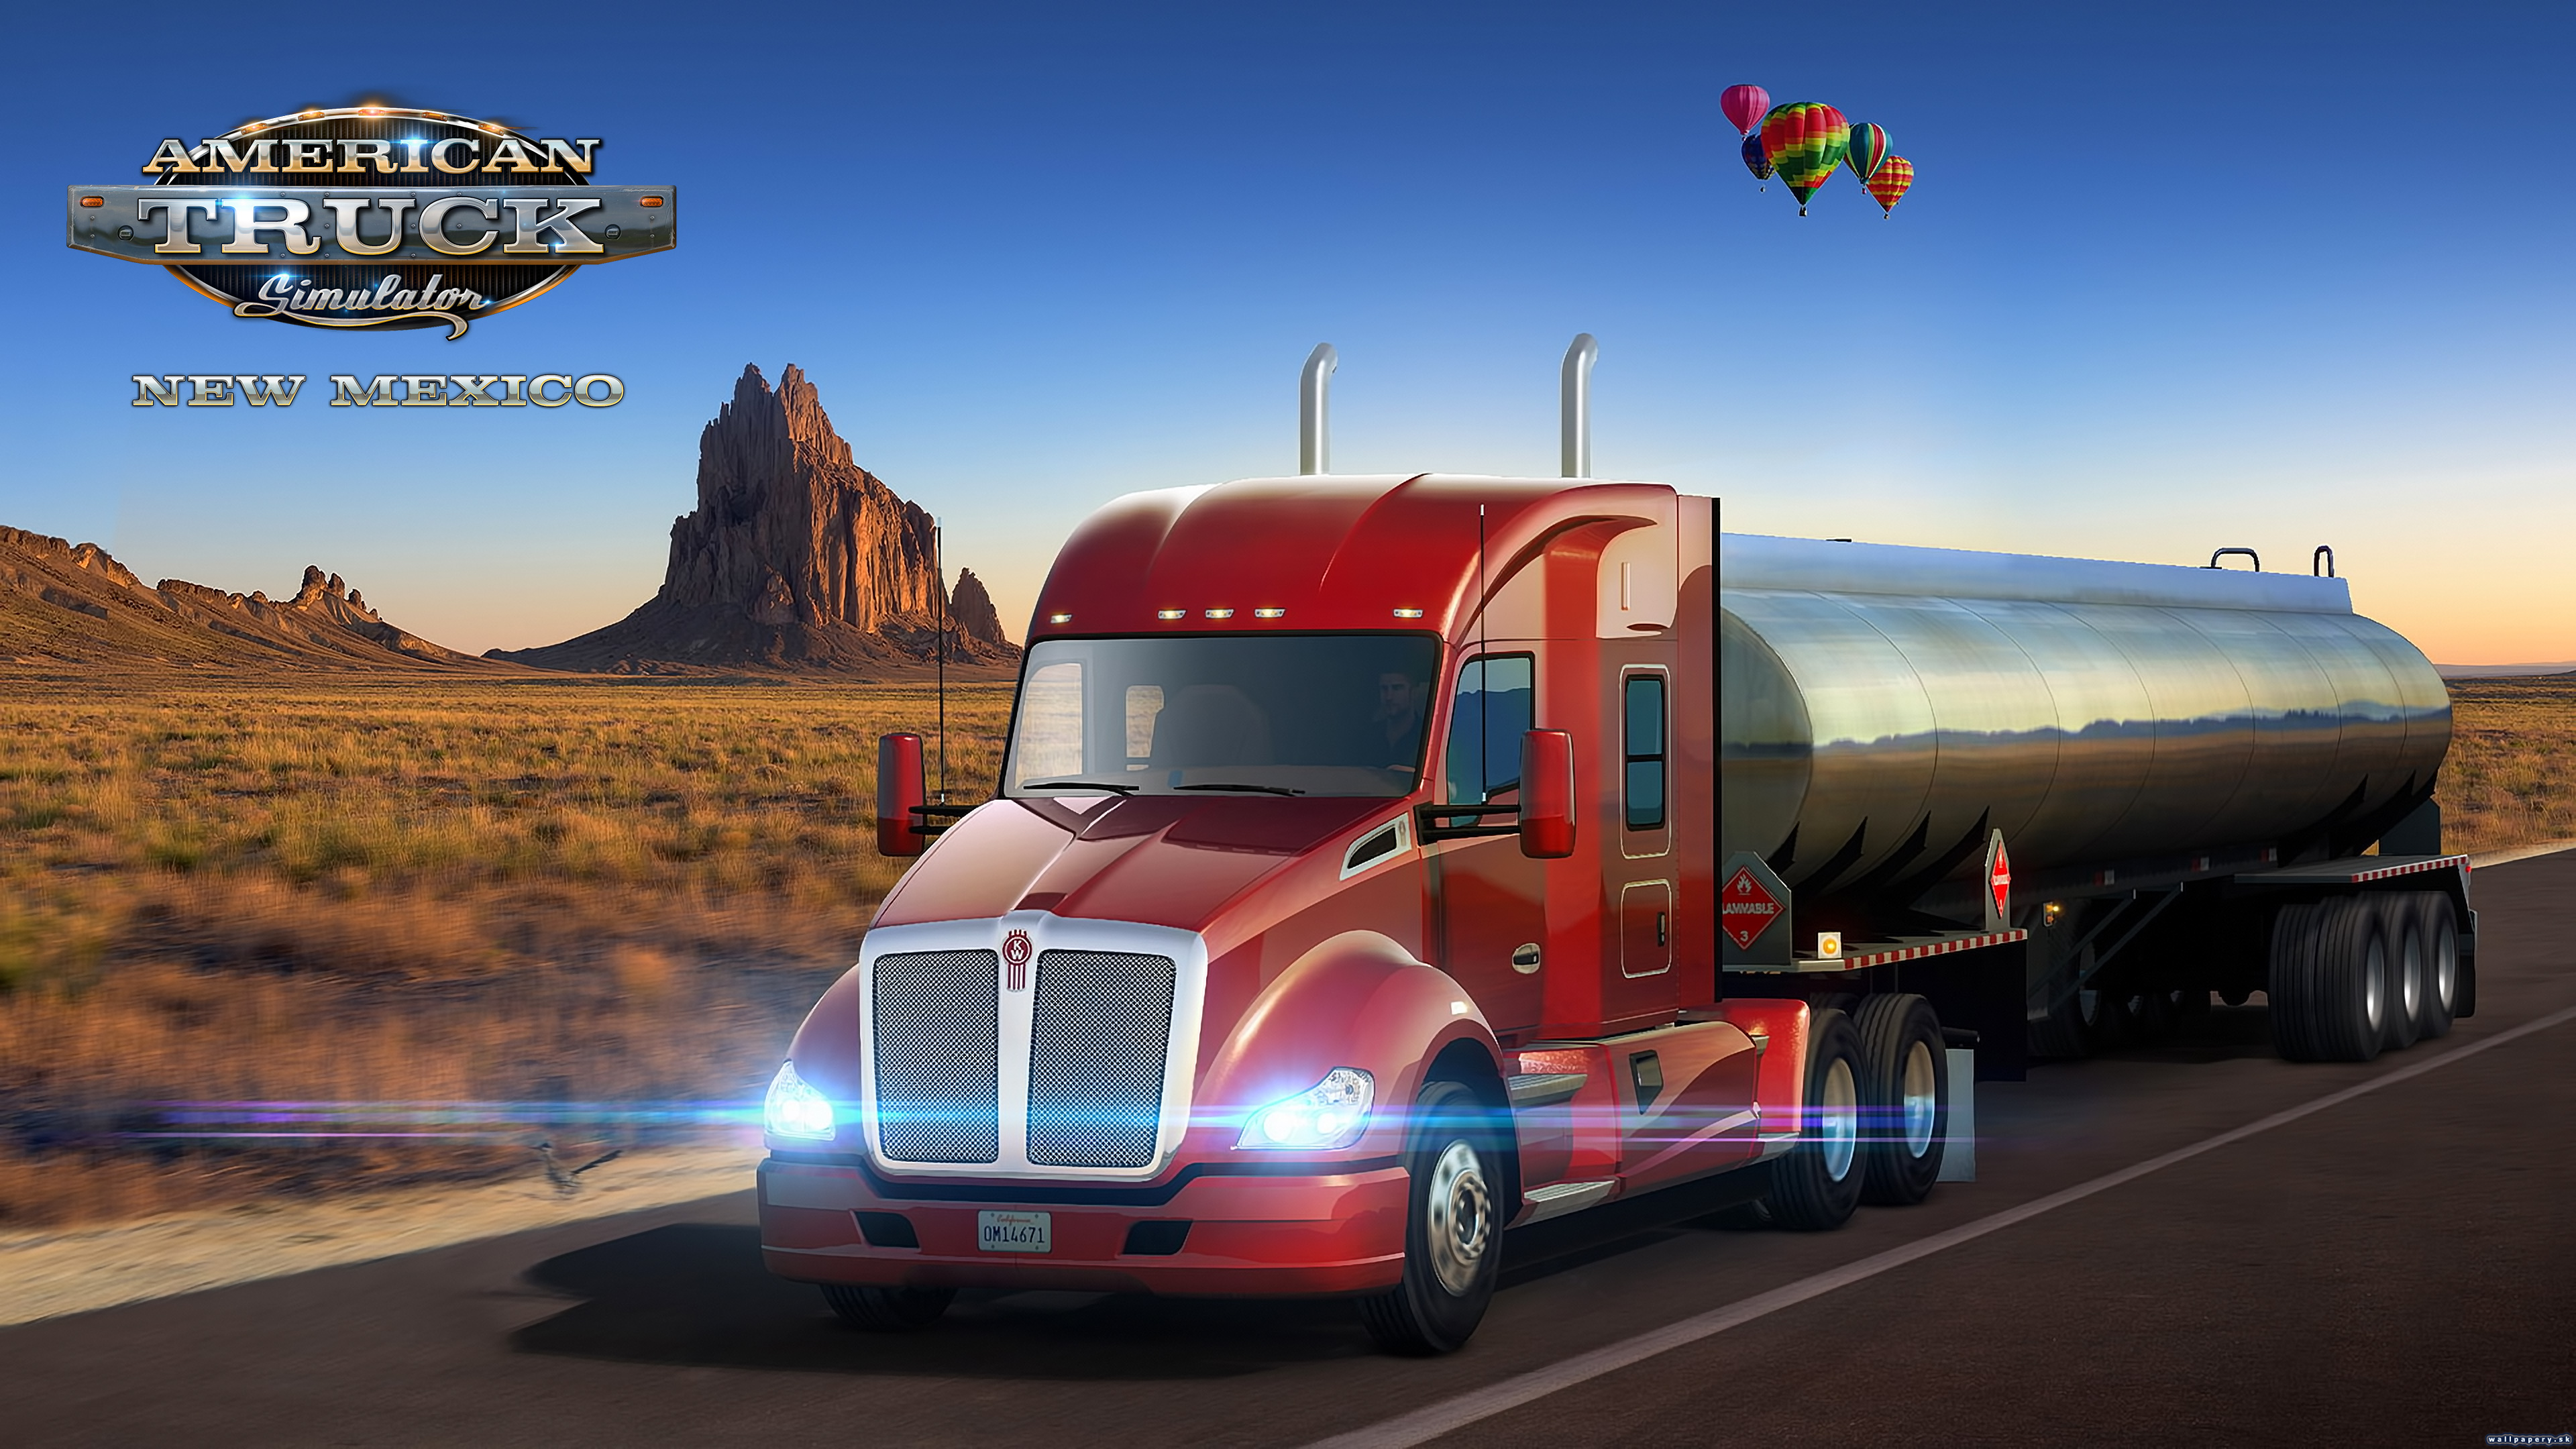 American Truck Simulator - New Mexico - wallpaper 1